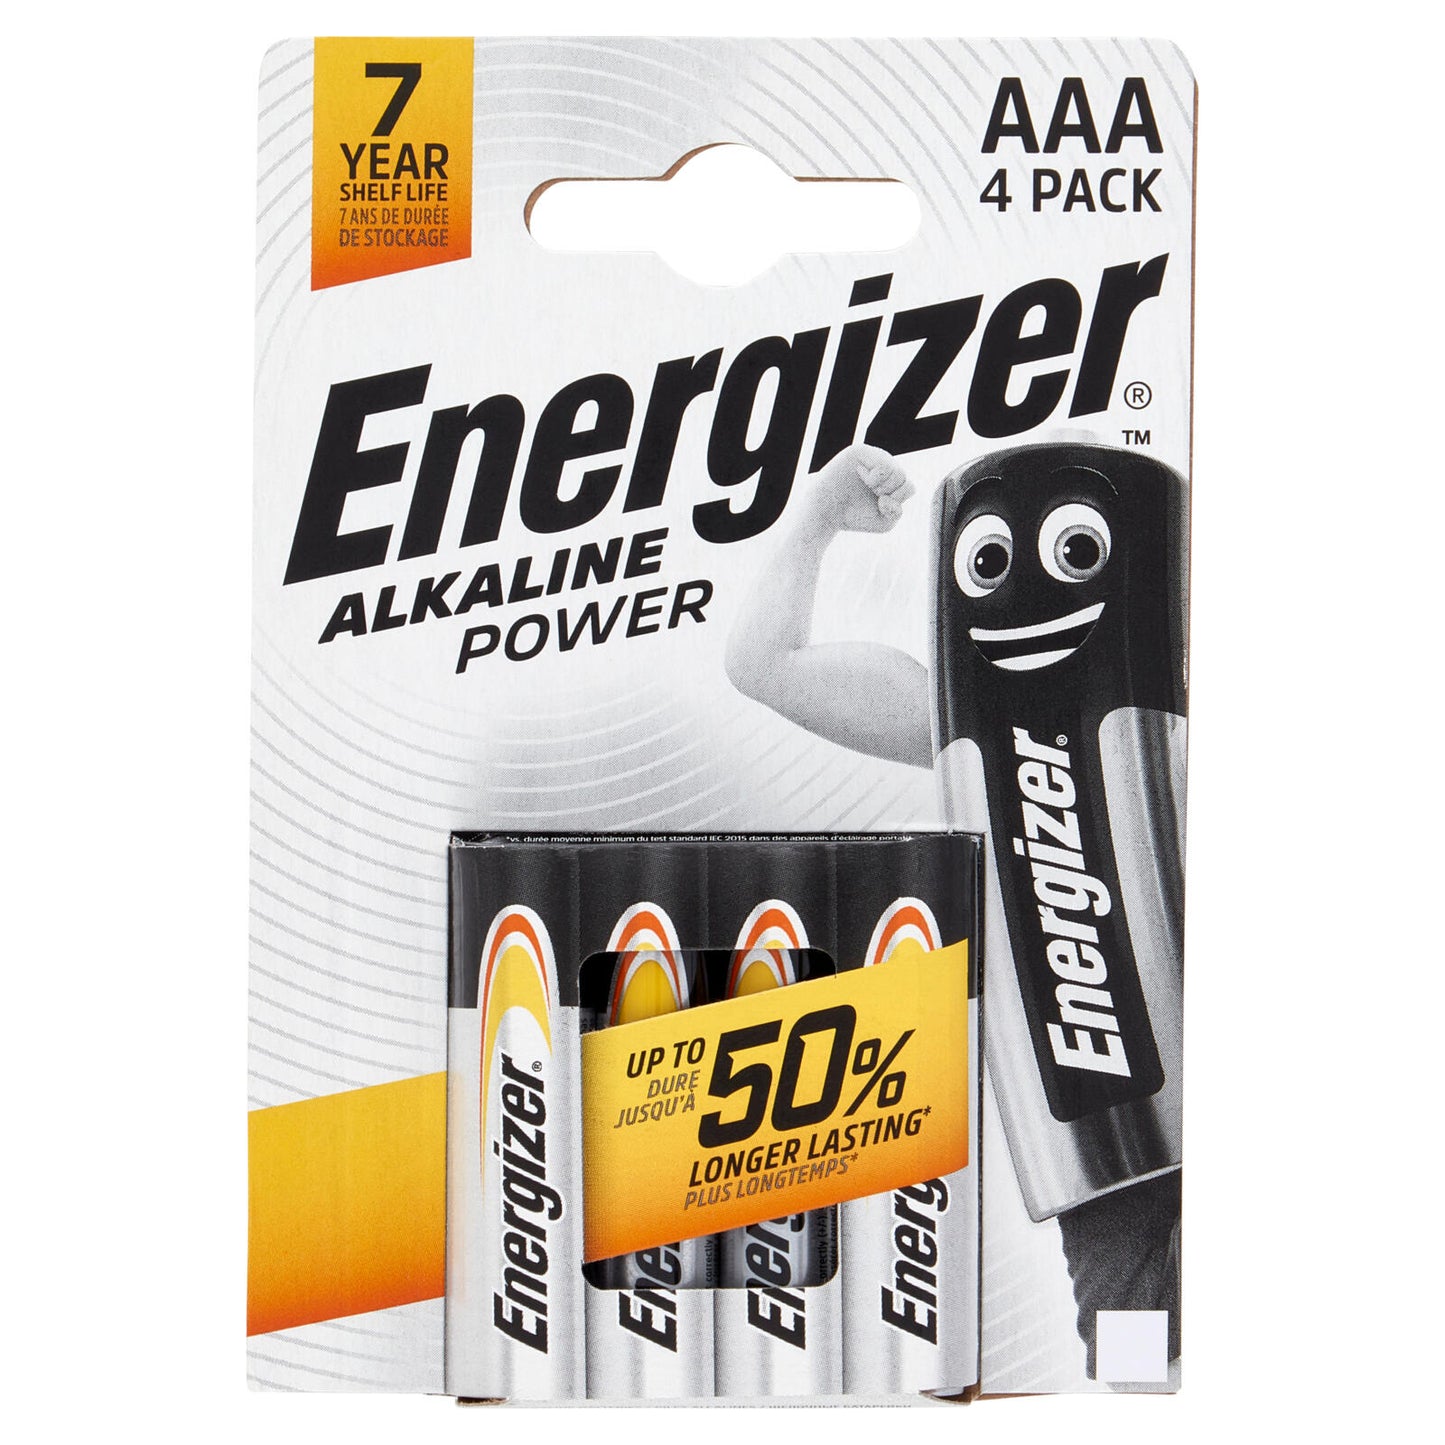 Energizer Alkaline Power AAA 4 pz